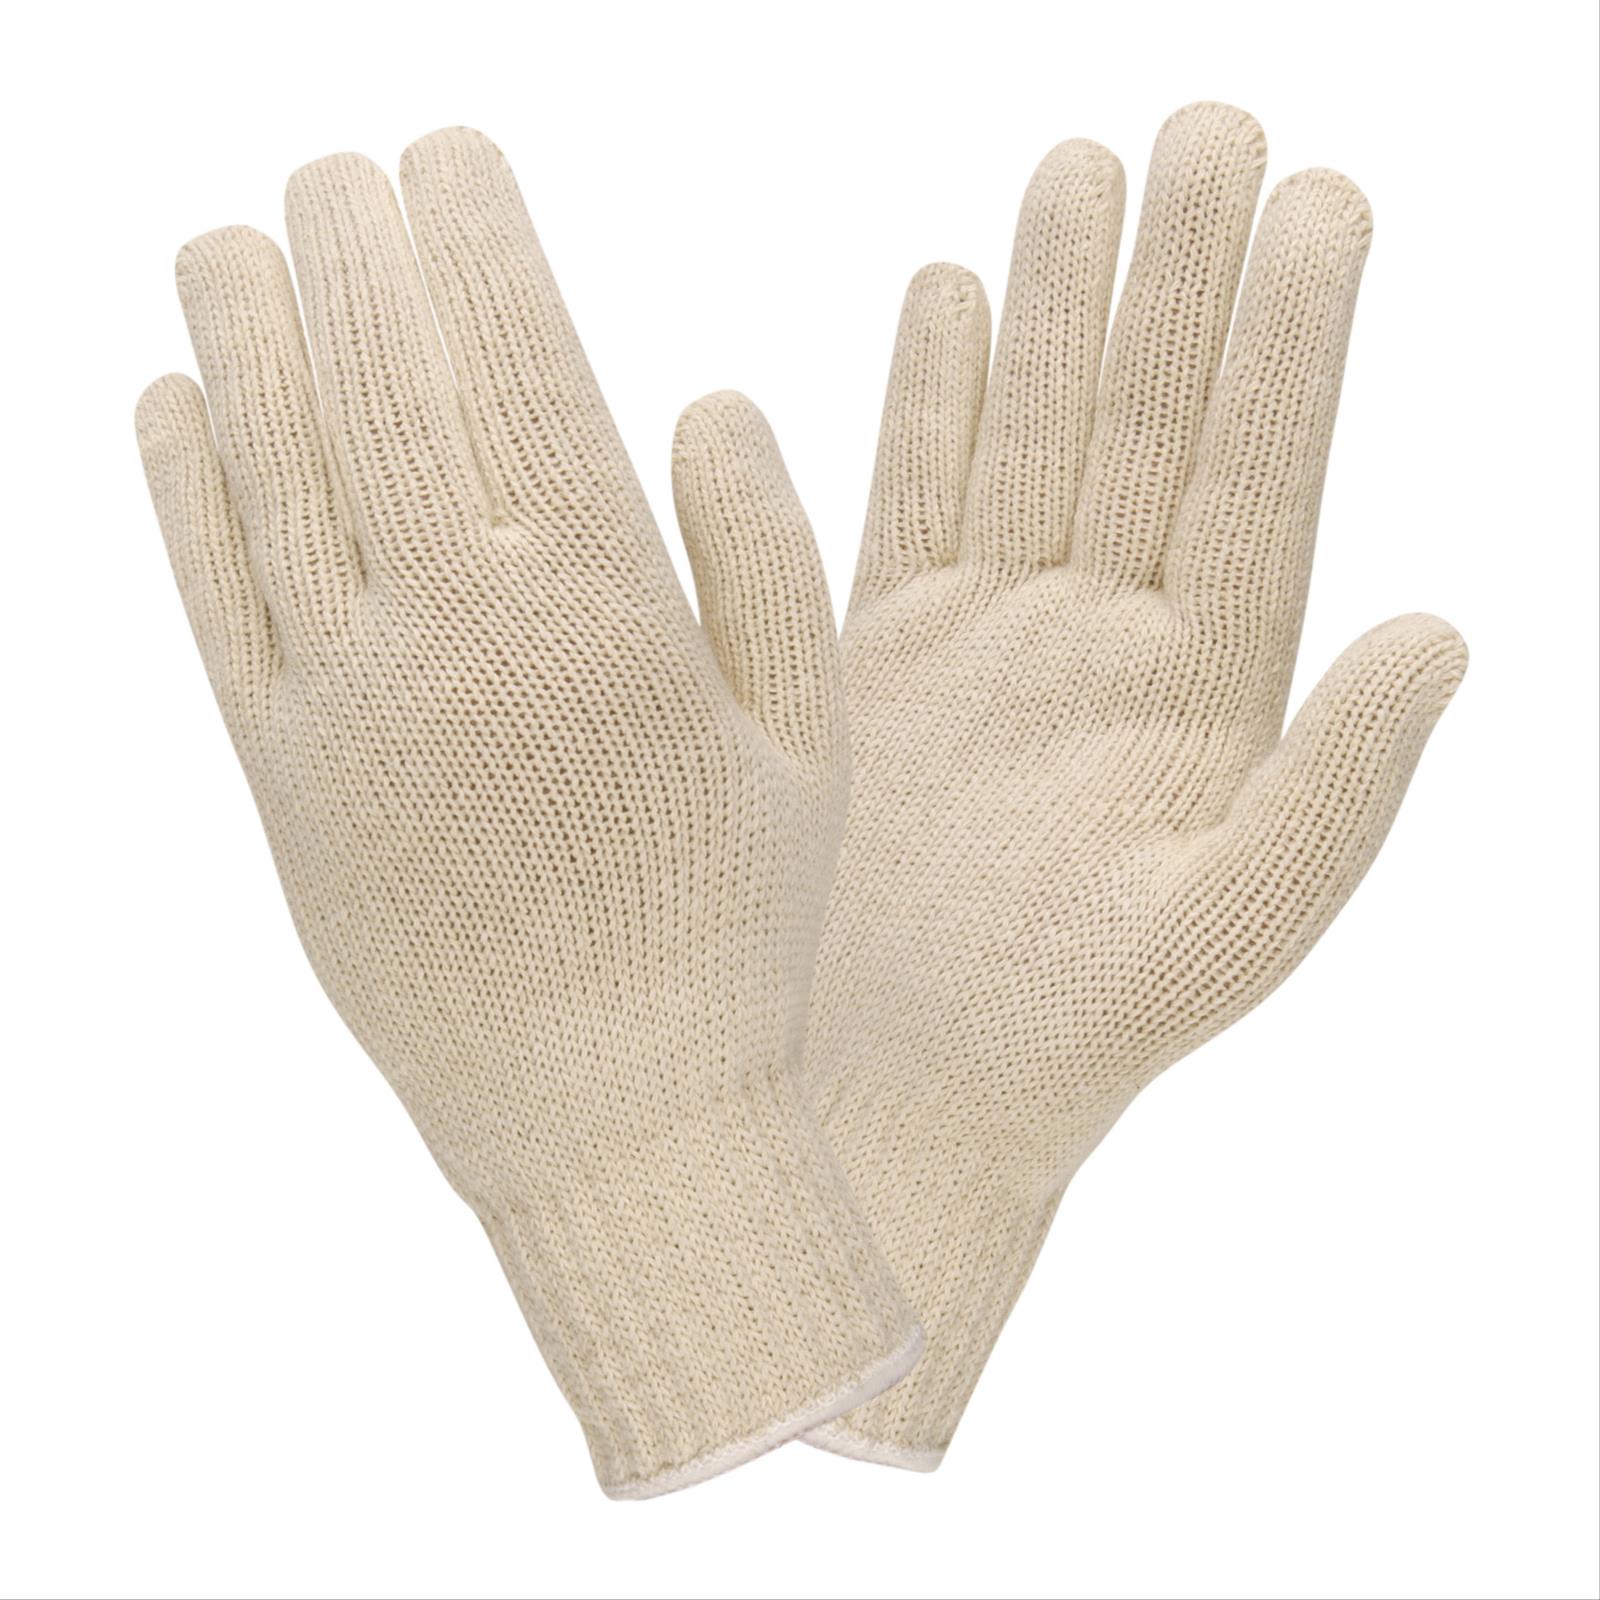 Medium Weight Cotton String Knit Gloves